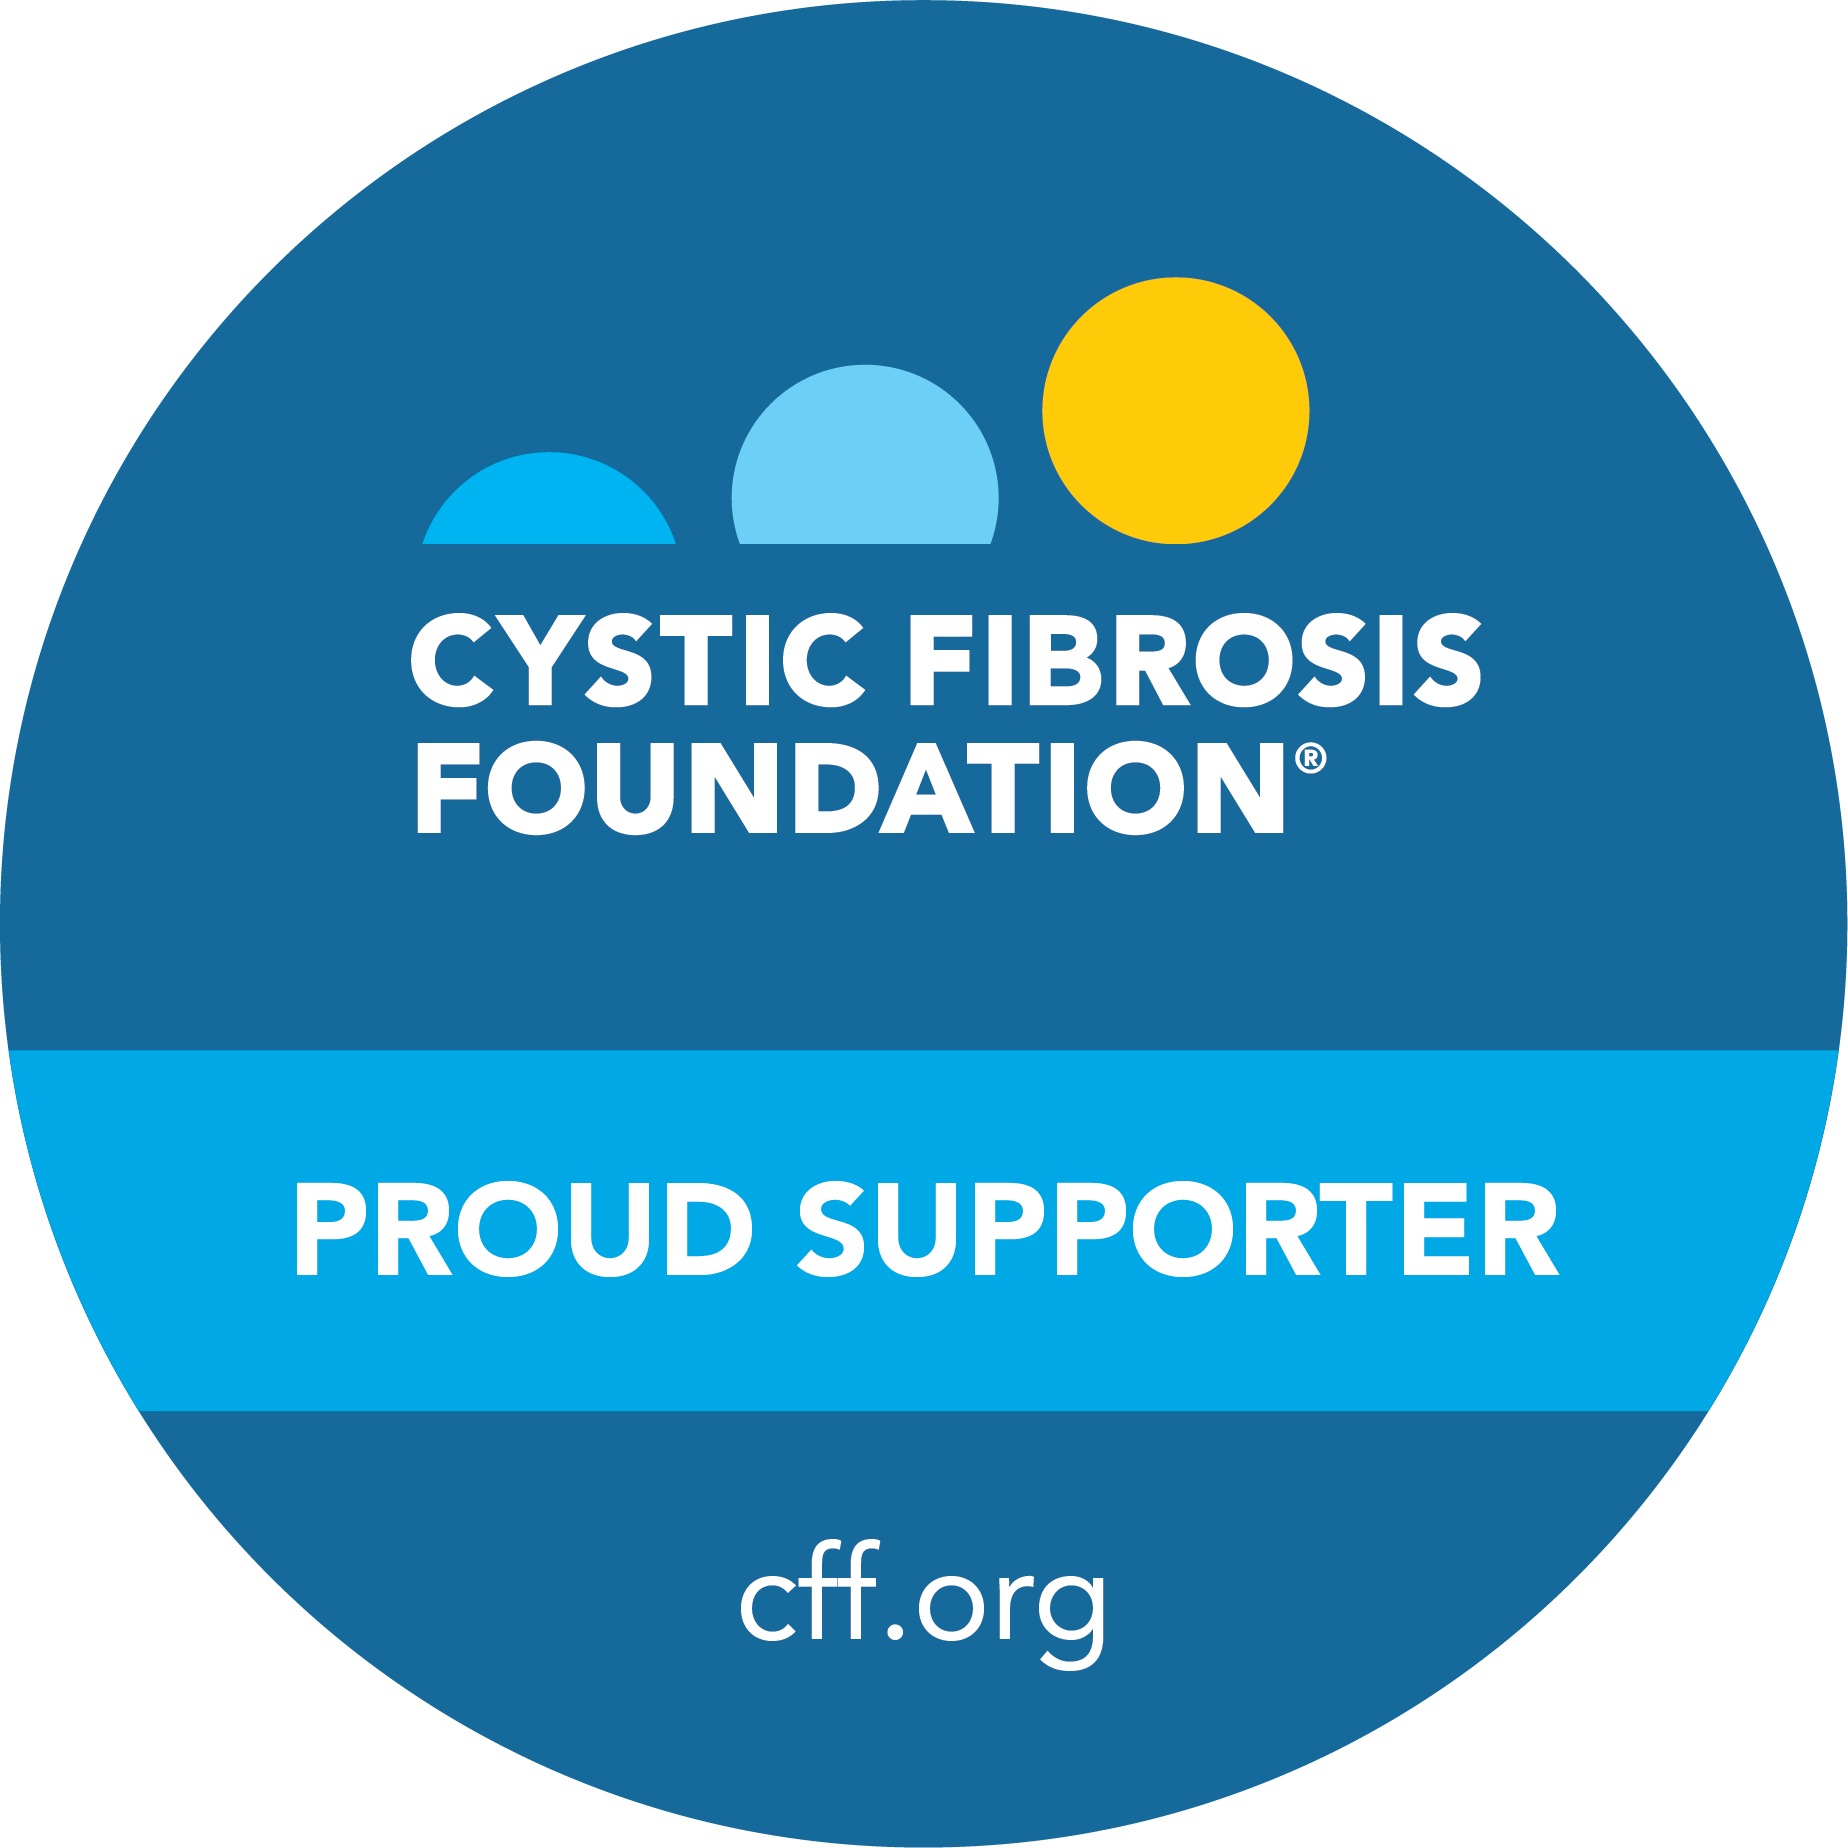 Cystic Fibrosis Foundation logo